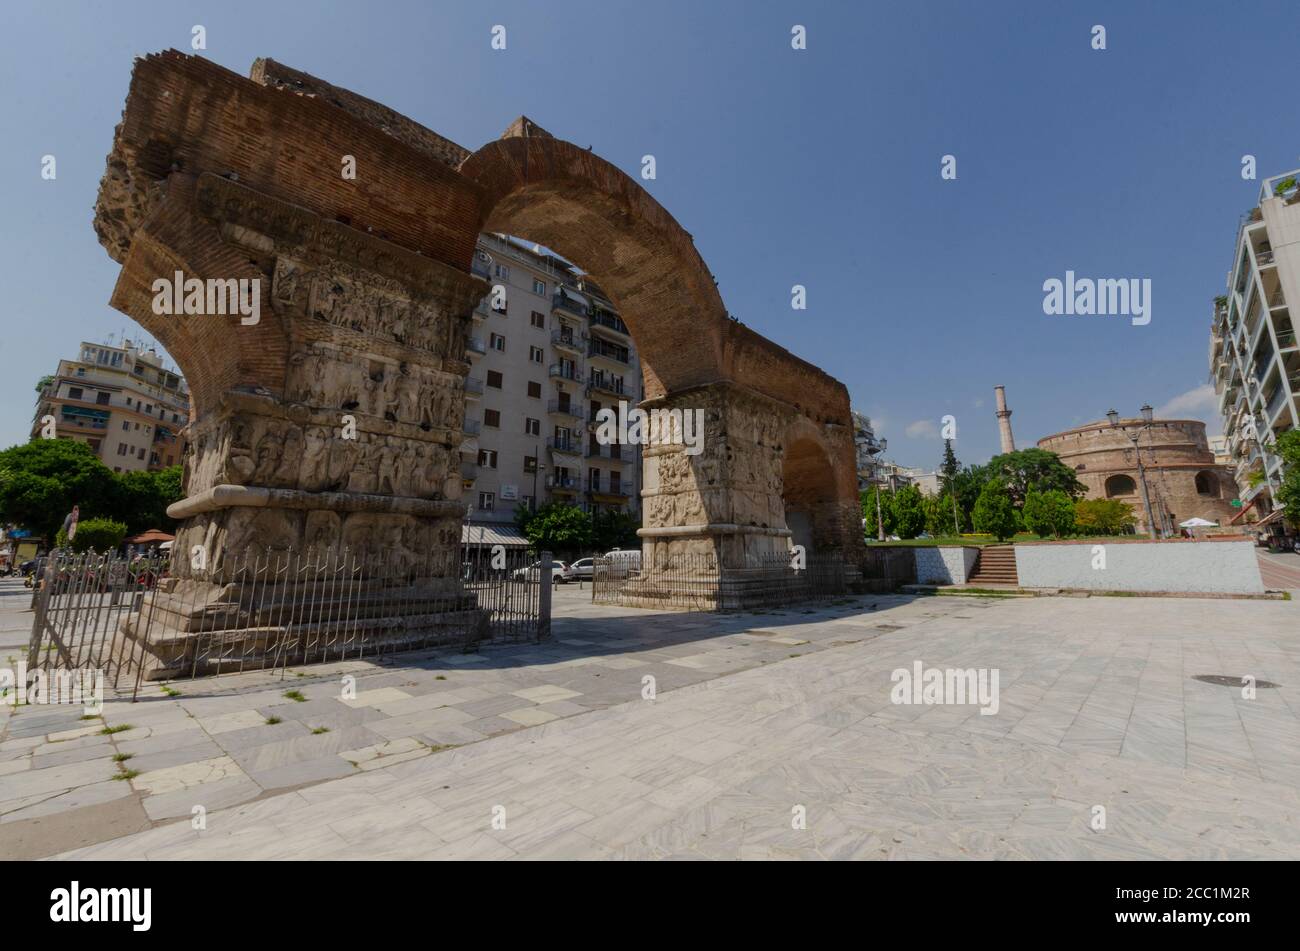 Gesamtansicht des berühmten Galerius-Bogens mit der Rotunde im Hintergrund in Thessaloniki Mazedonien Griechenland. Dieses Wahrzeichen war früher ein Osmaner Stockfoto